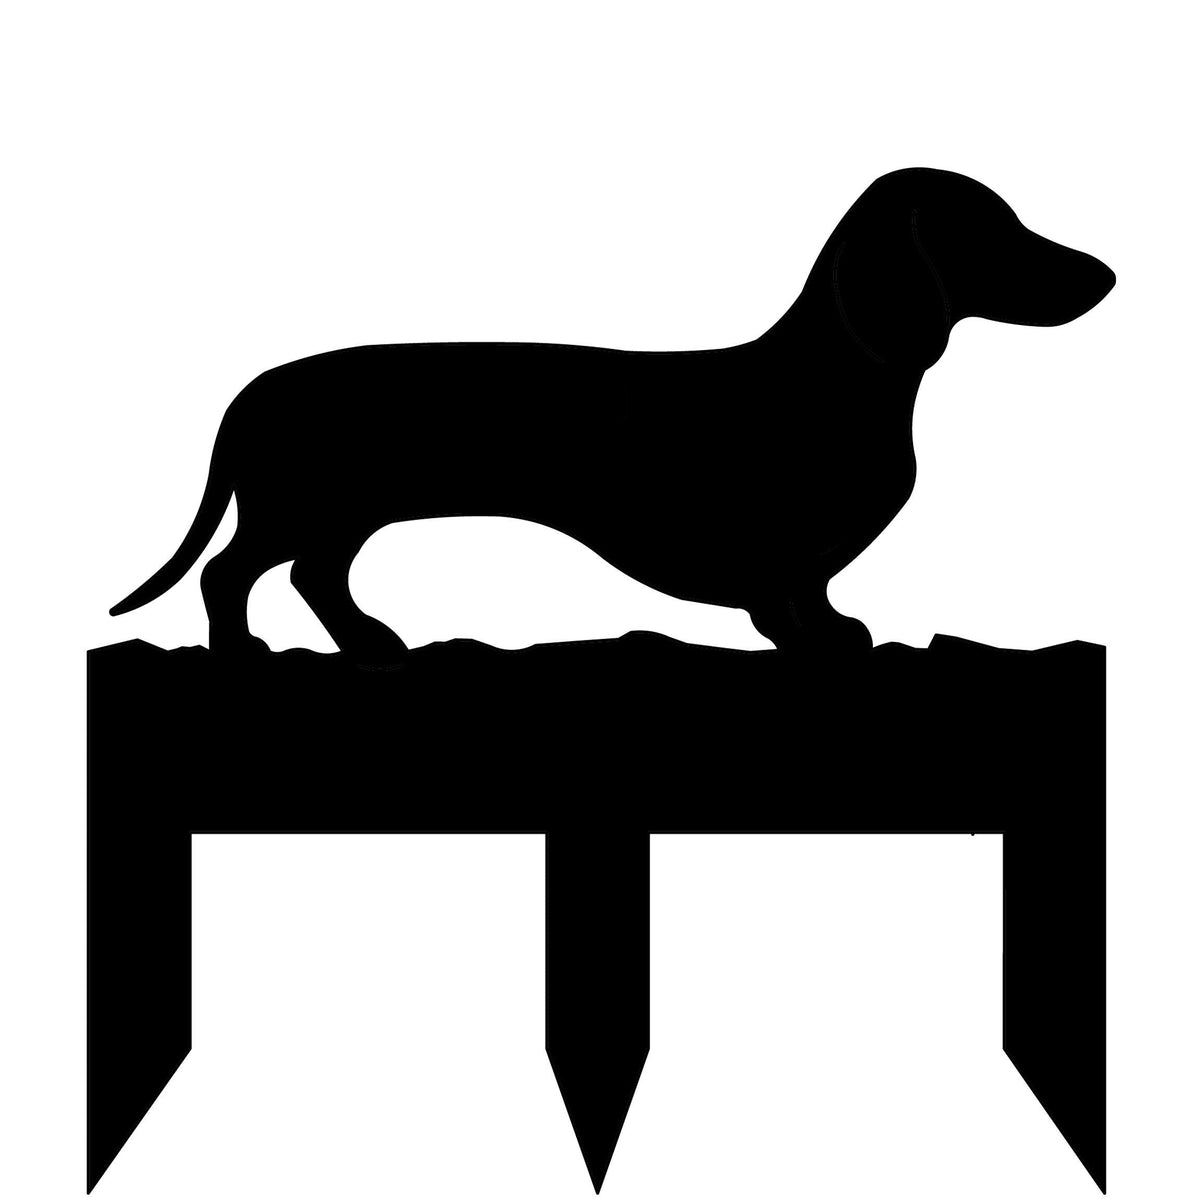 Dachshund dog address stake